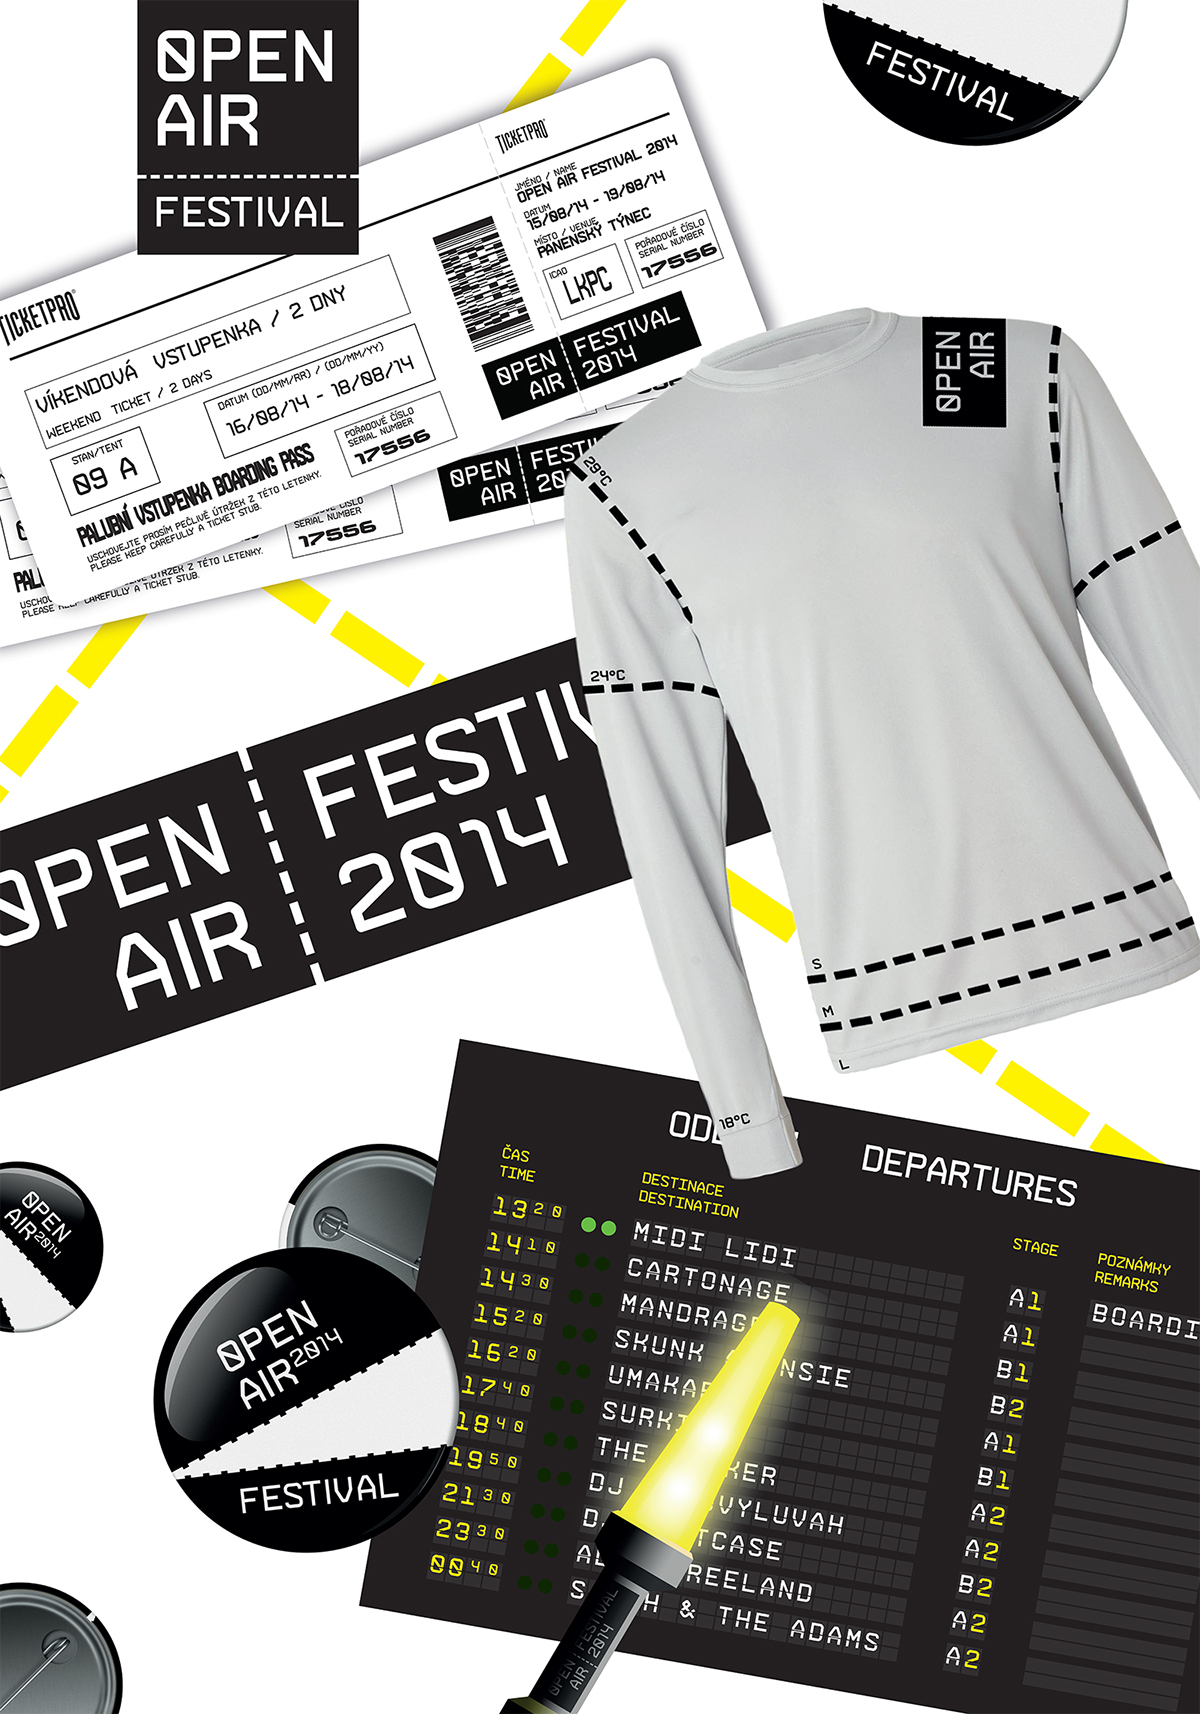 festival open air t-shirt tickets logo